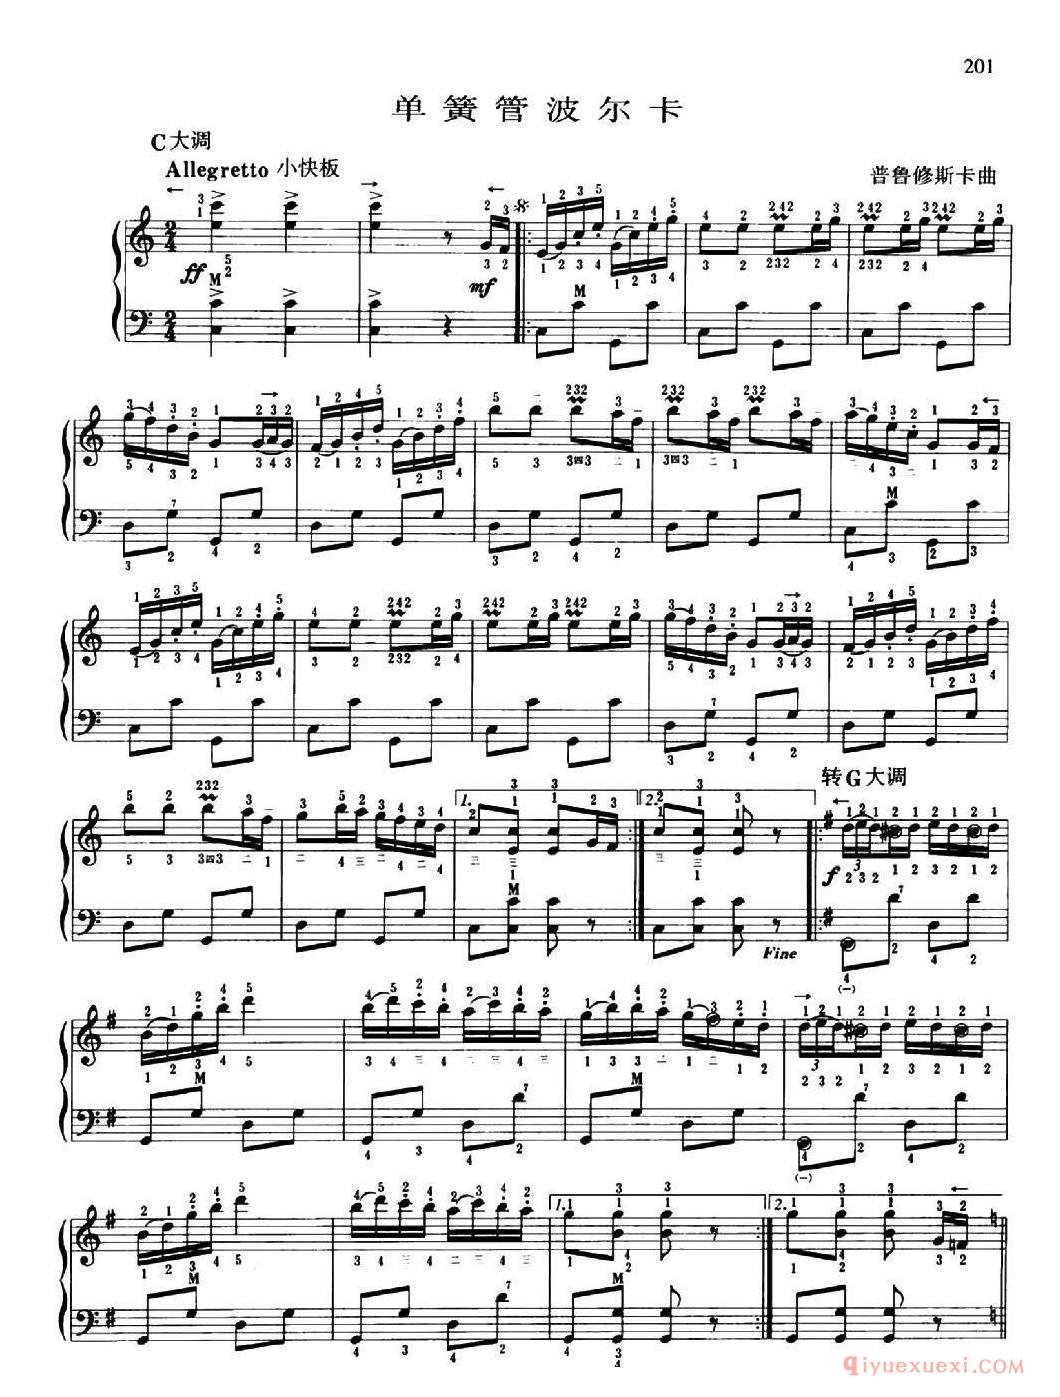 手风琴乐谱【单簧管波尔卡 普罗修斯卡作曲、带指法版】五线谱 